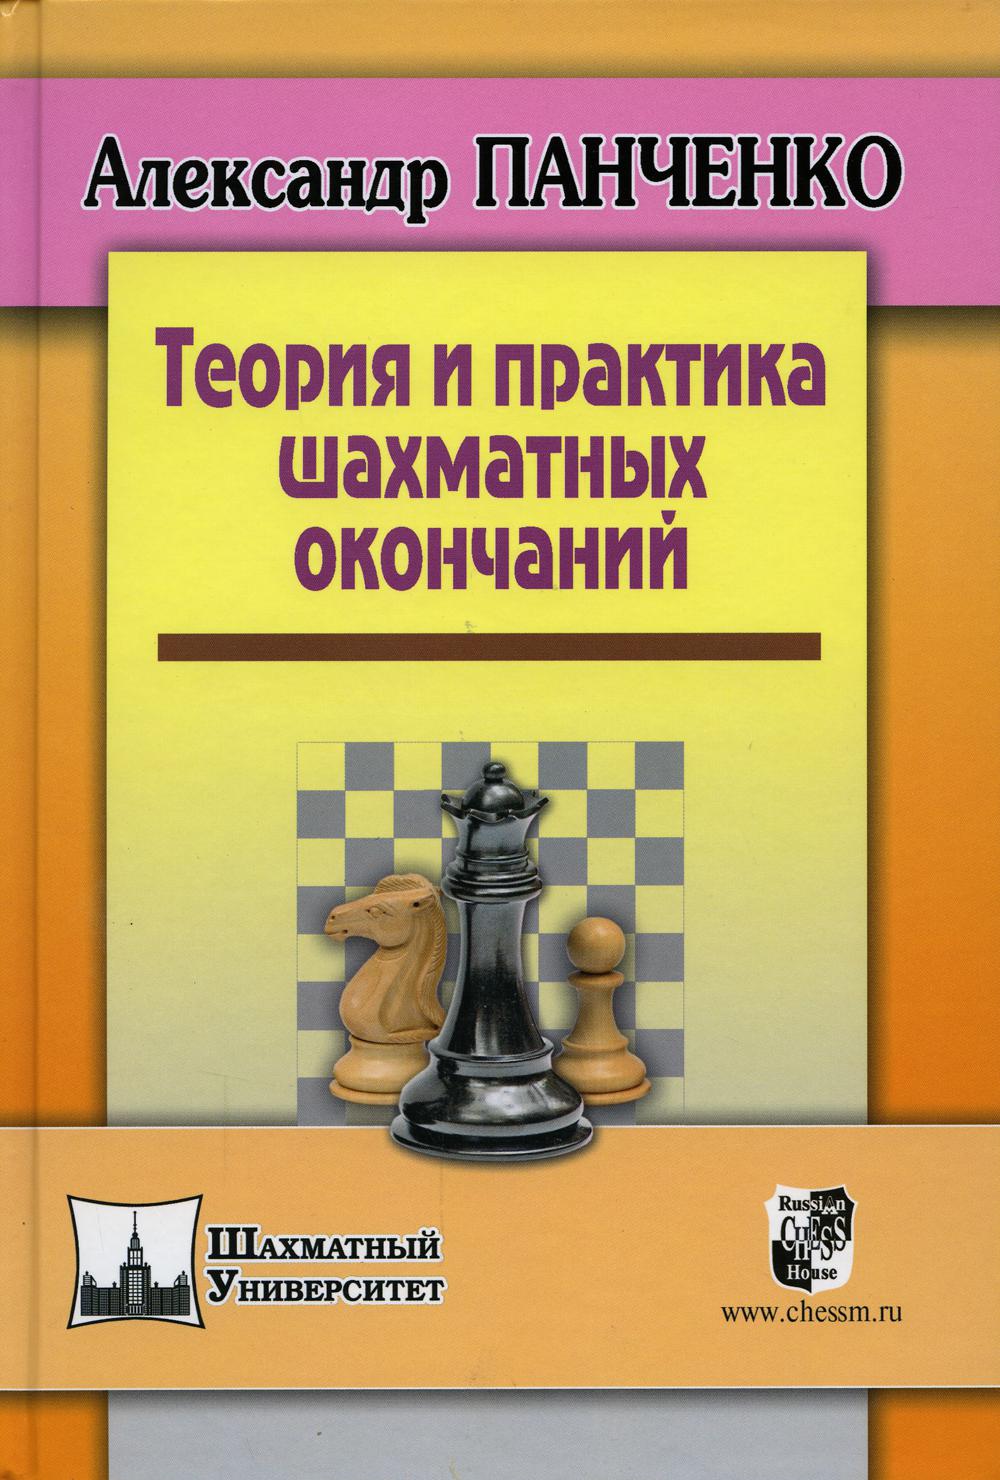 фото Книга теория и практика шахматных окончаний russian chess house